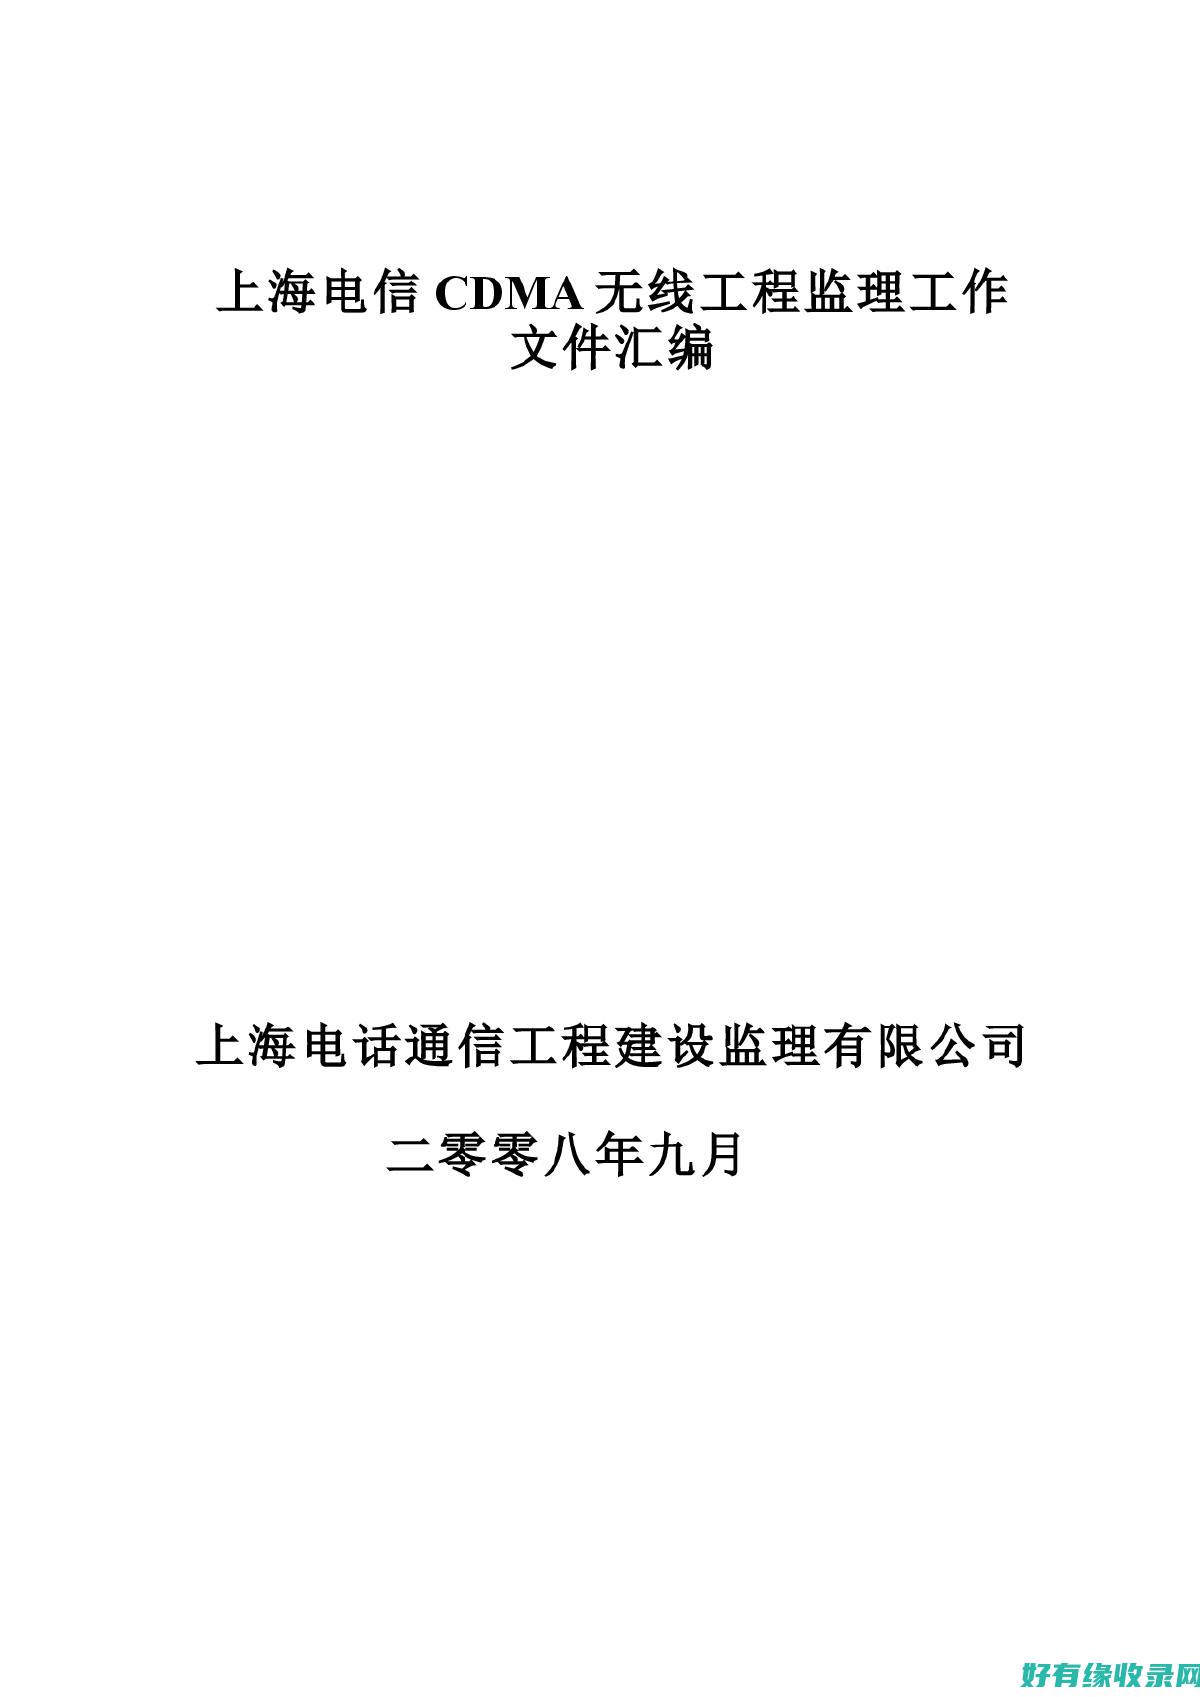 上海电信DNS：优化网络速度的秘密武器 (上海电信dns地址)